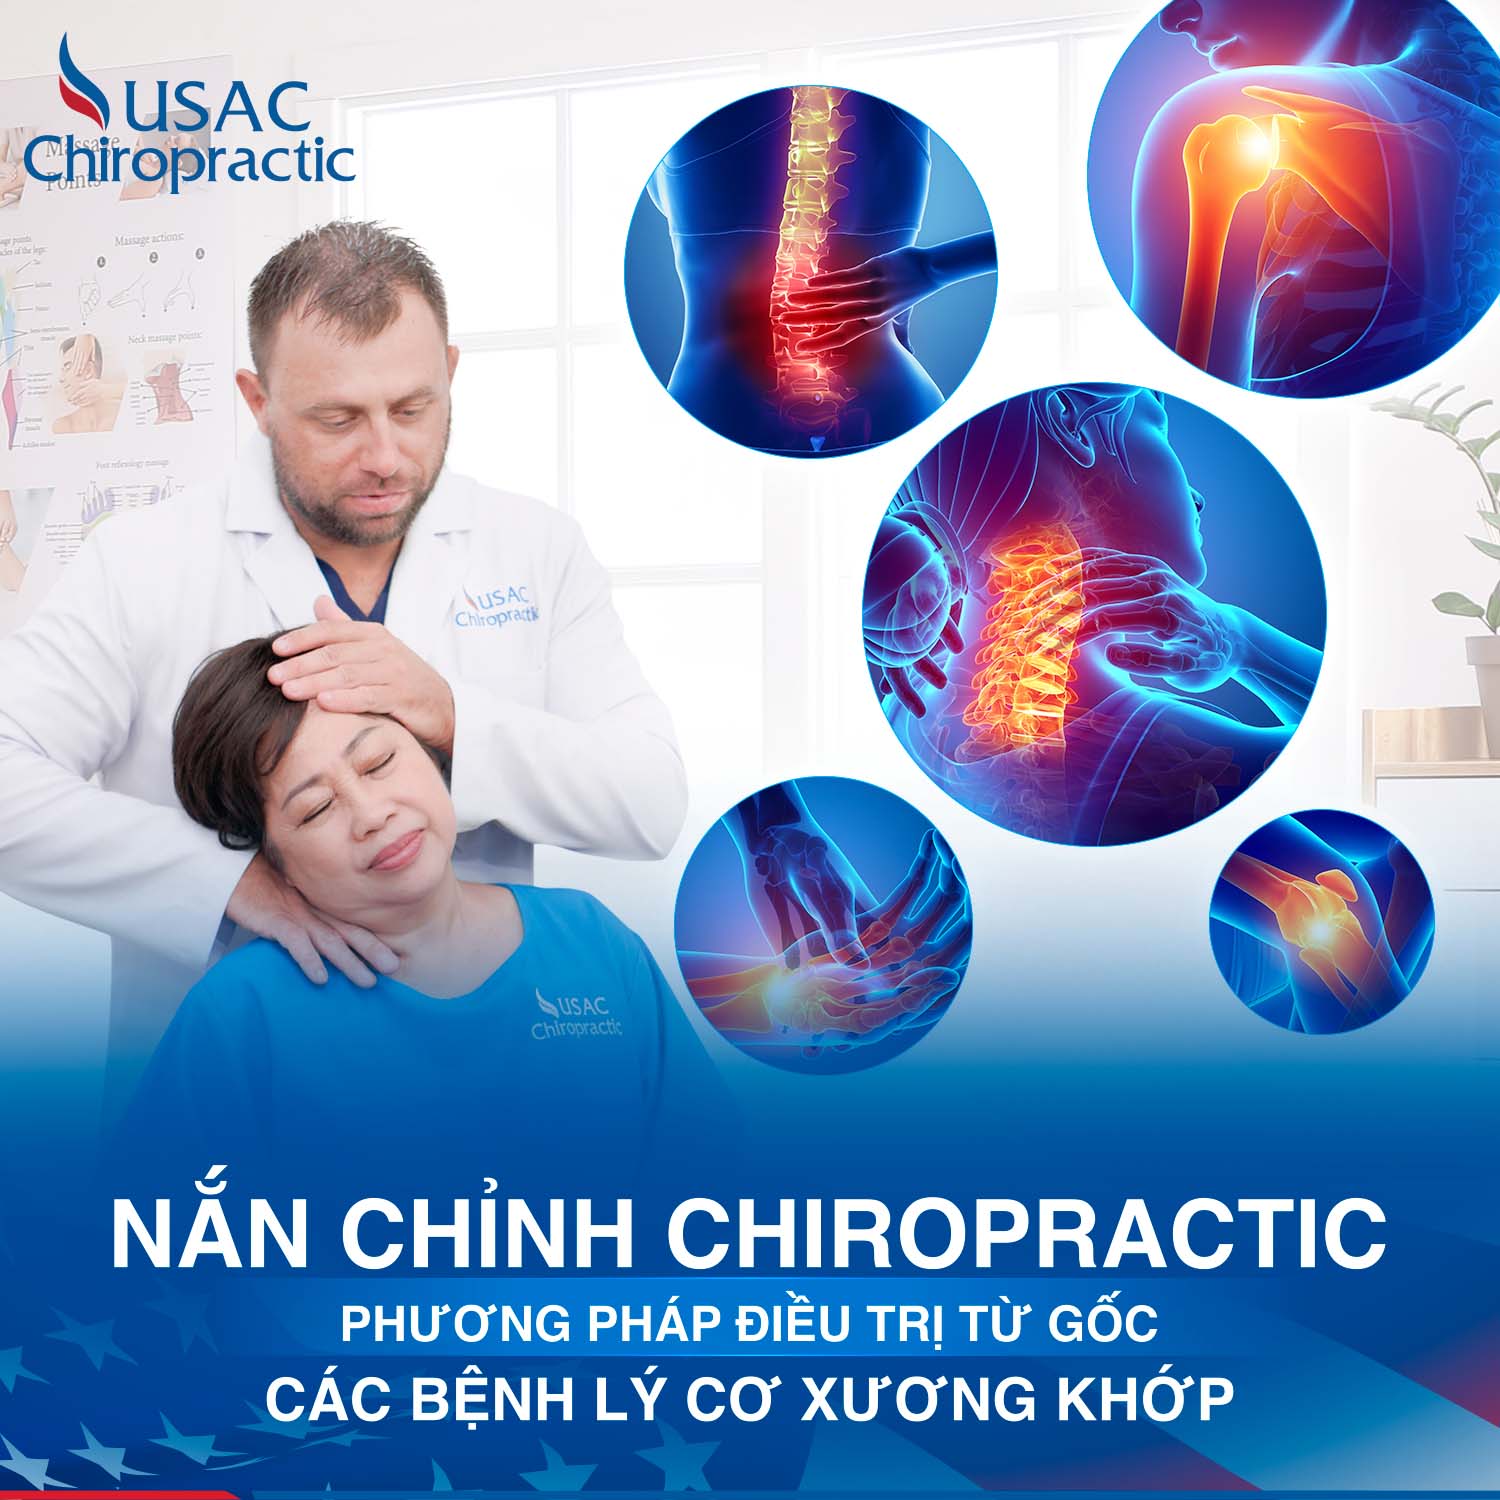 phương pháp chiropractic là gì